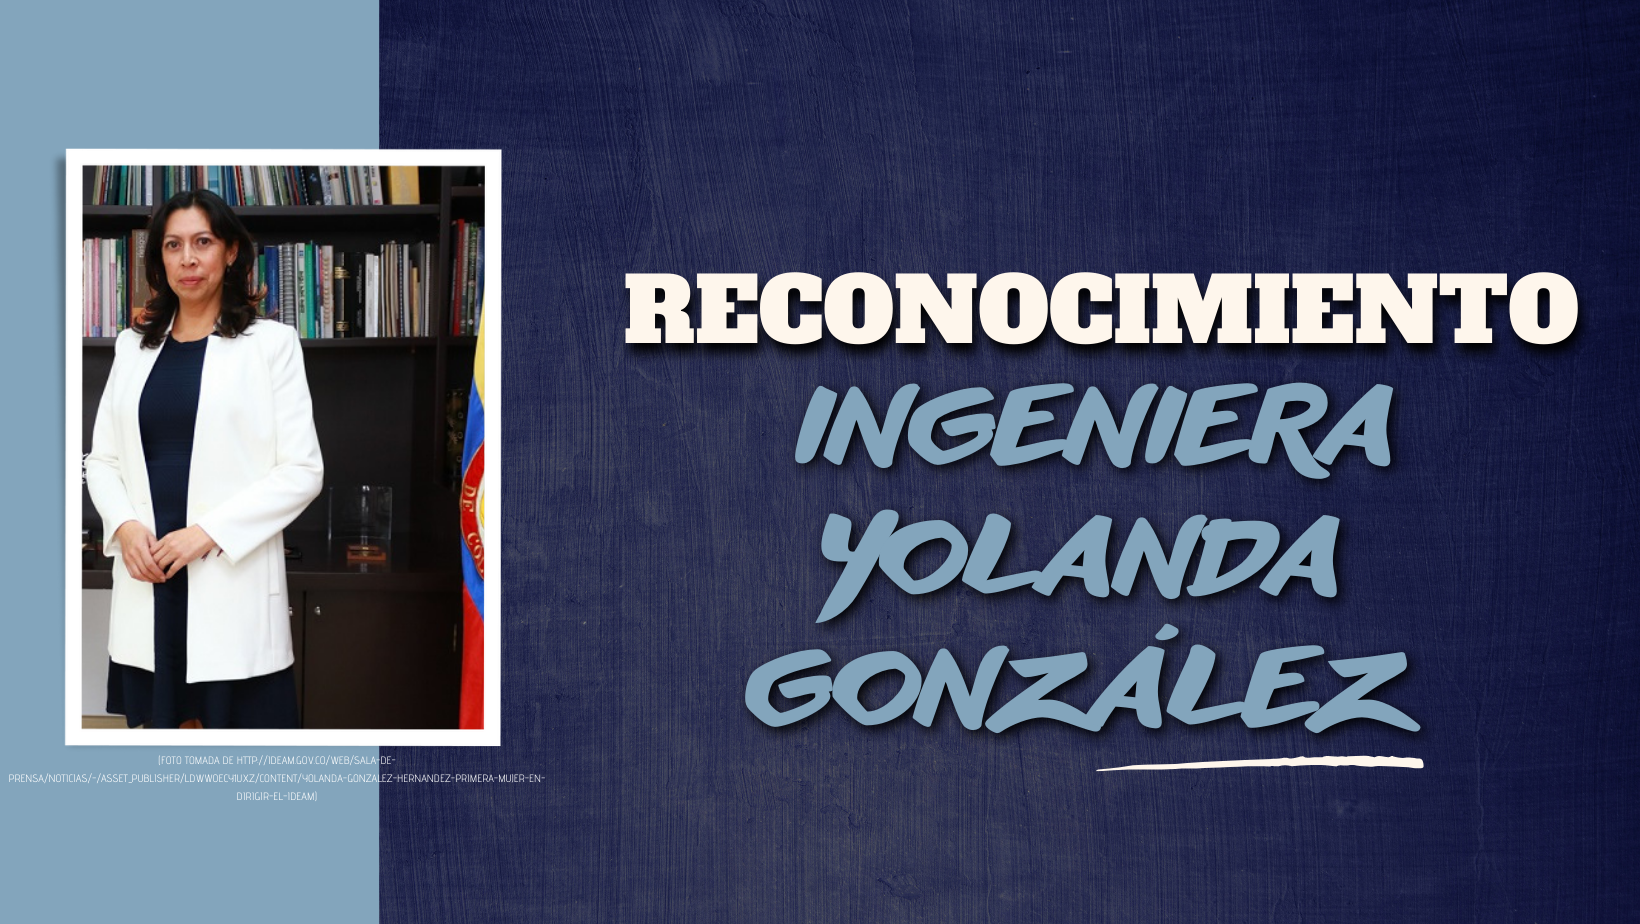  Reconocimiento Ingeniera Yolanda González